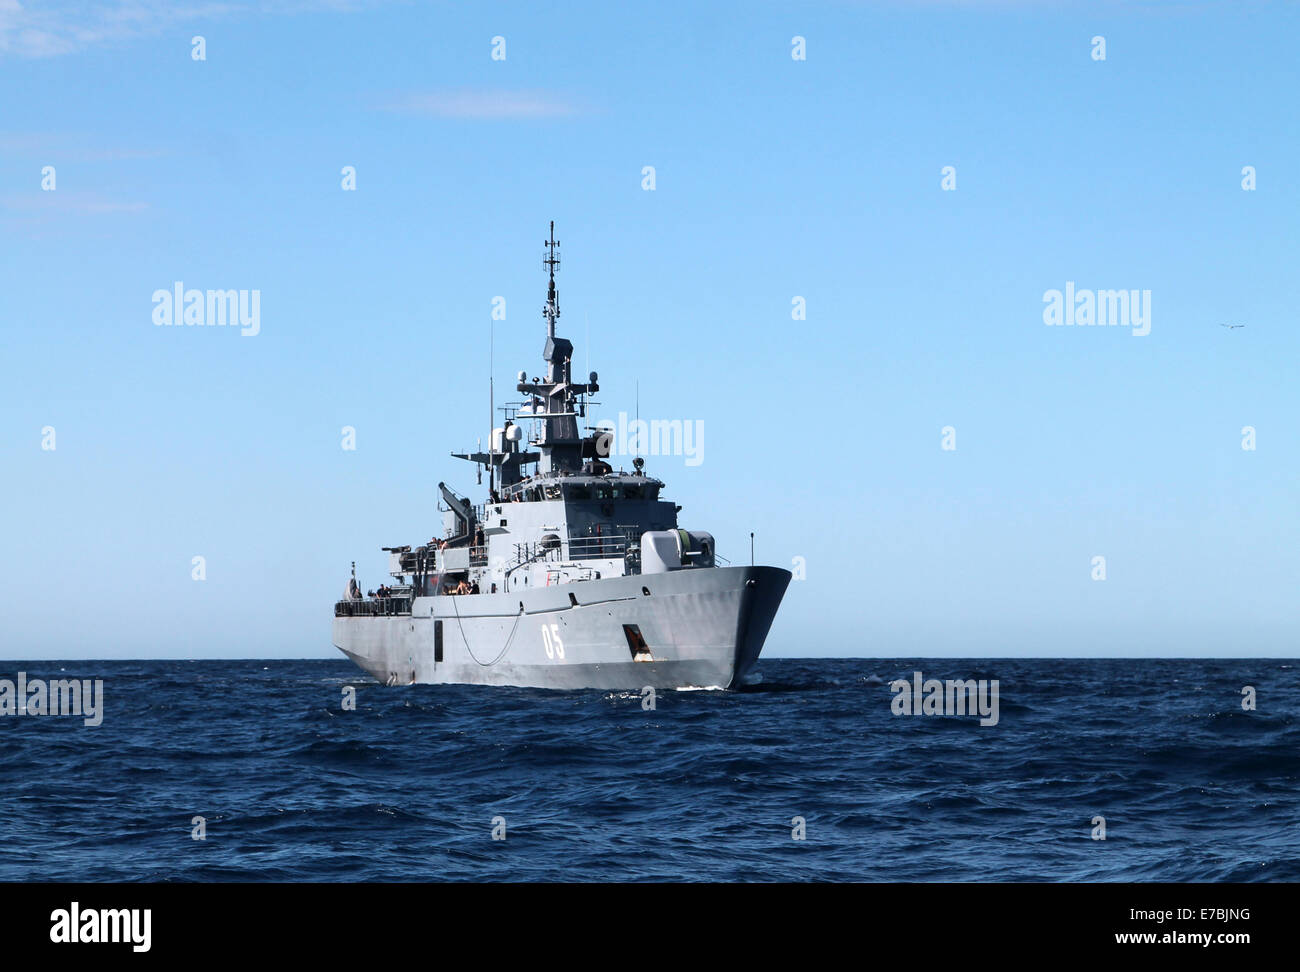 FNS (minelayer) Uusimaa, Finnish Navy in the Atlantic Ocean Stock Photo